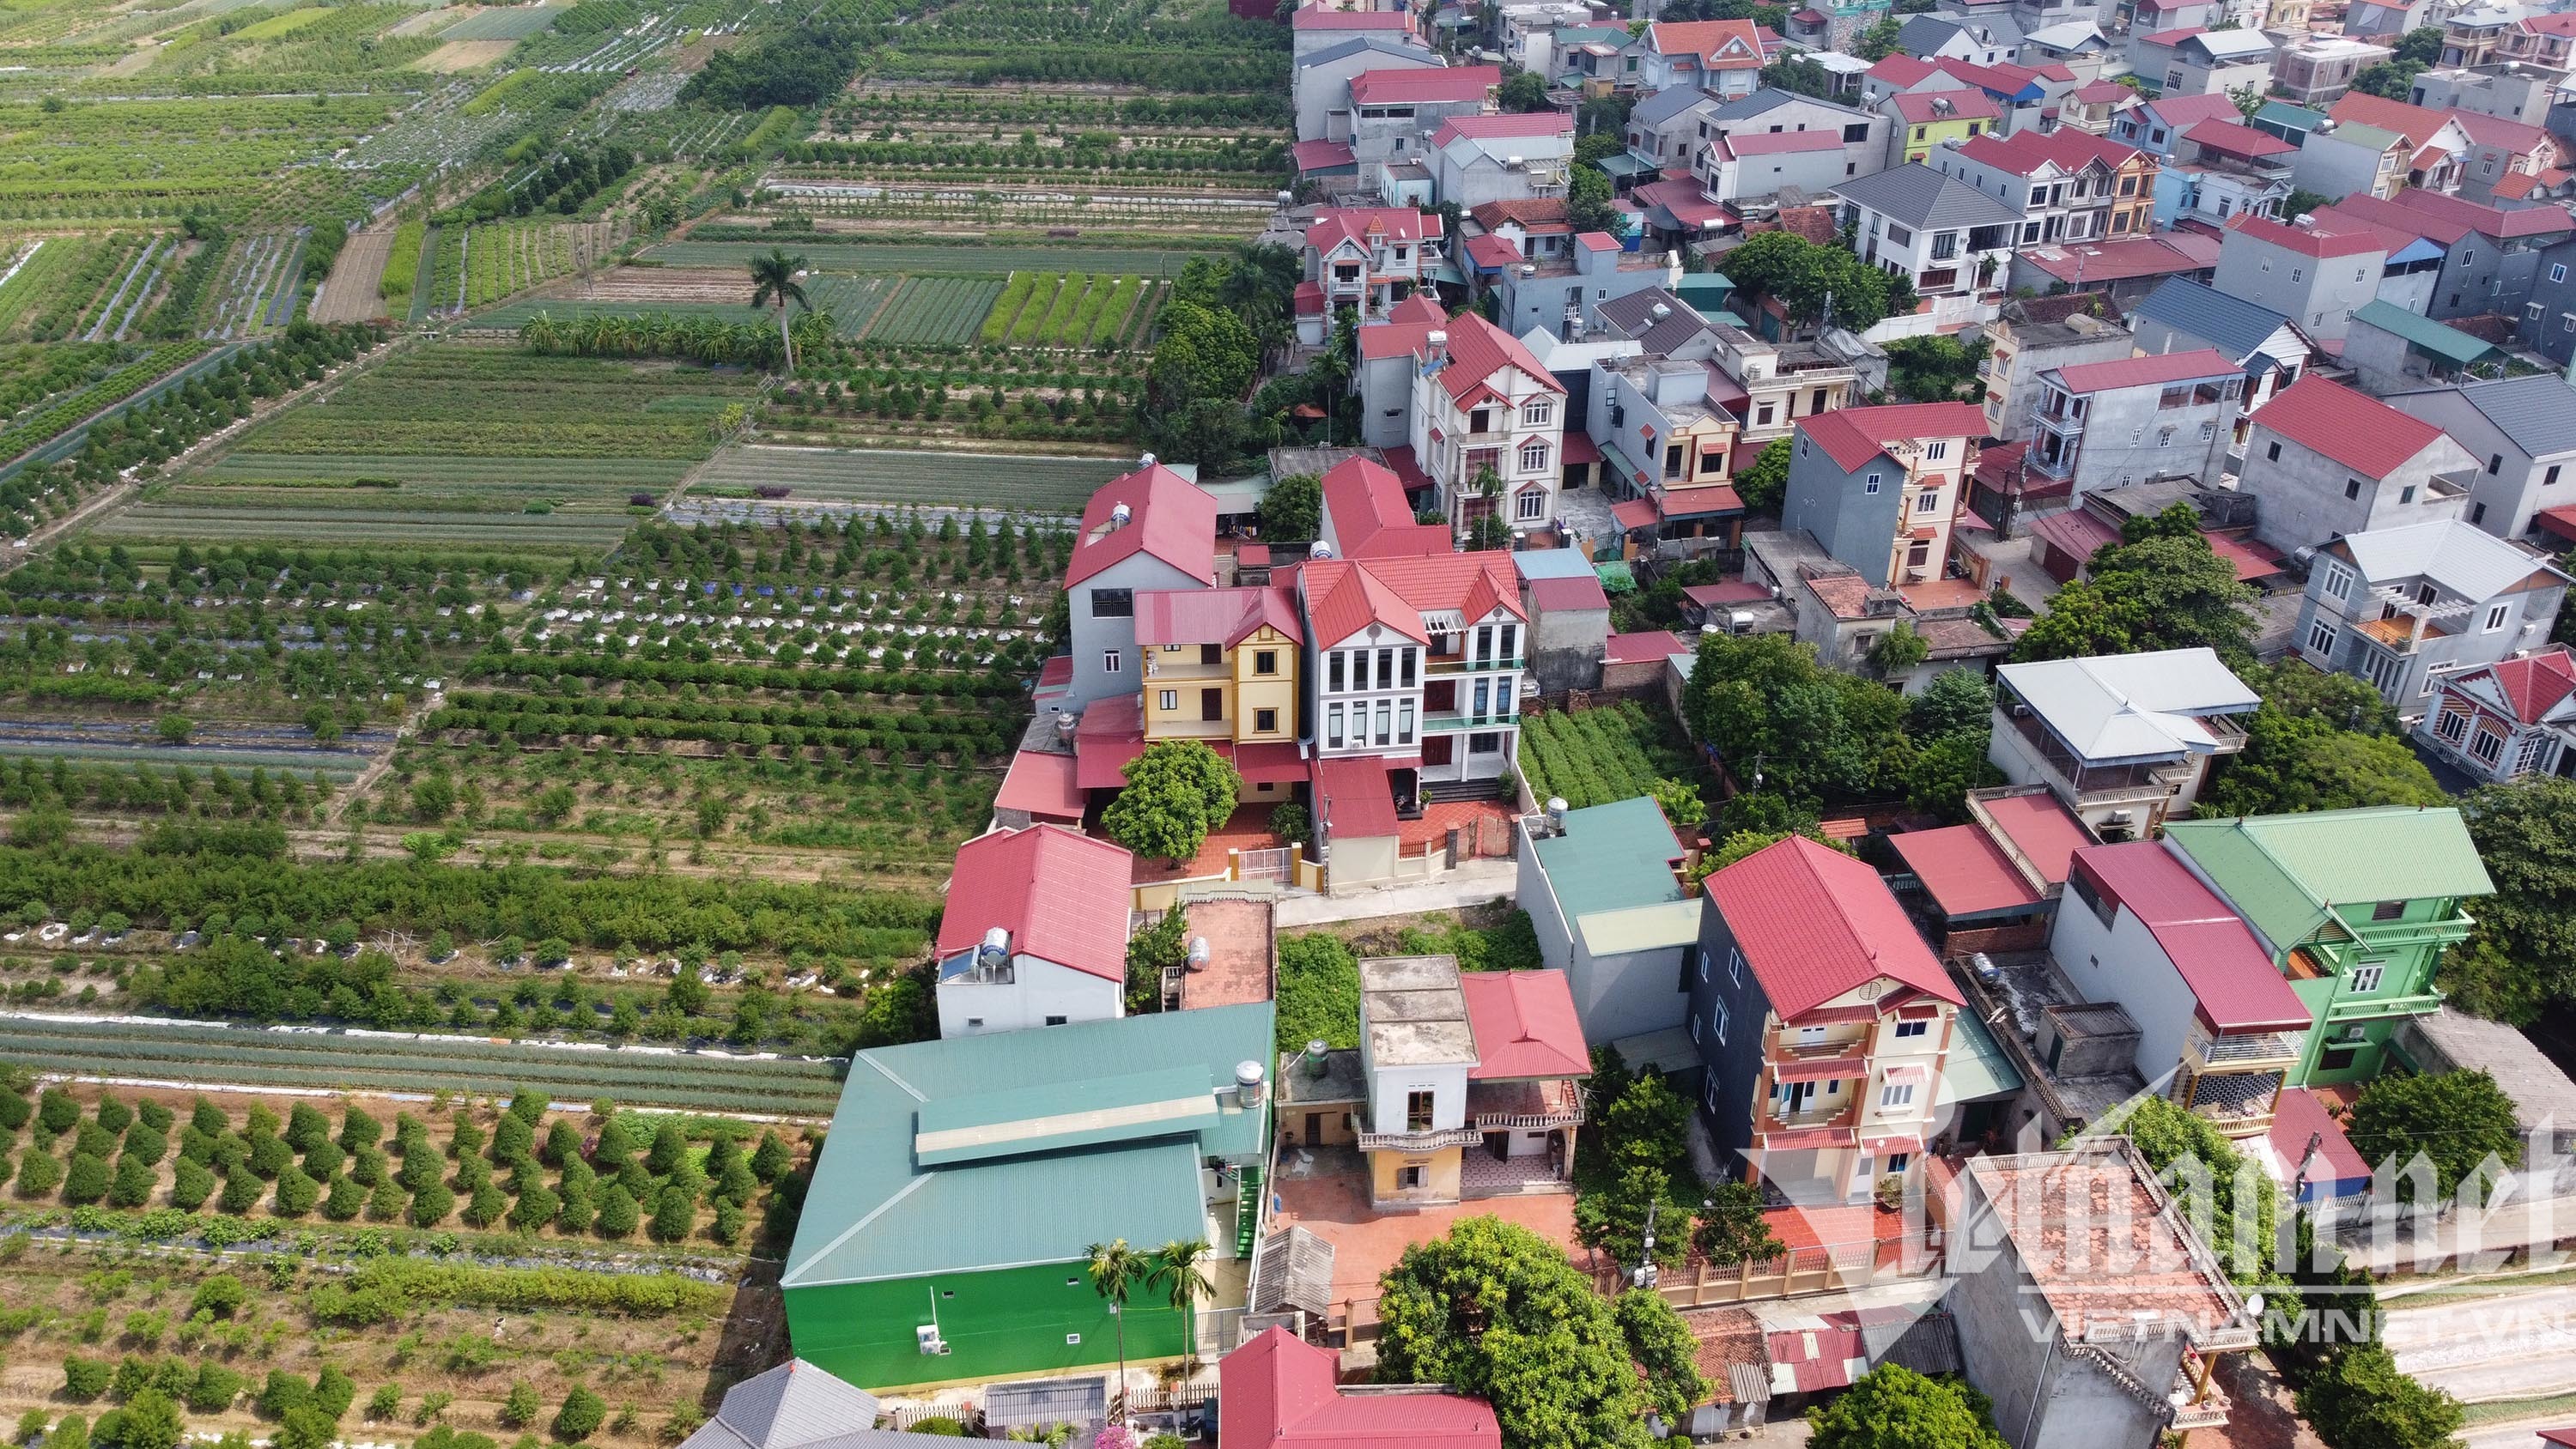 Lần đầu tiên ở Hà Nội, bay flycam giám sát nghìn dân trong 'vùng đỏ'